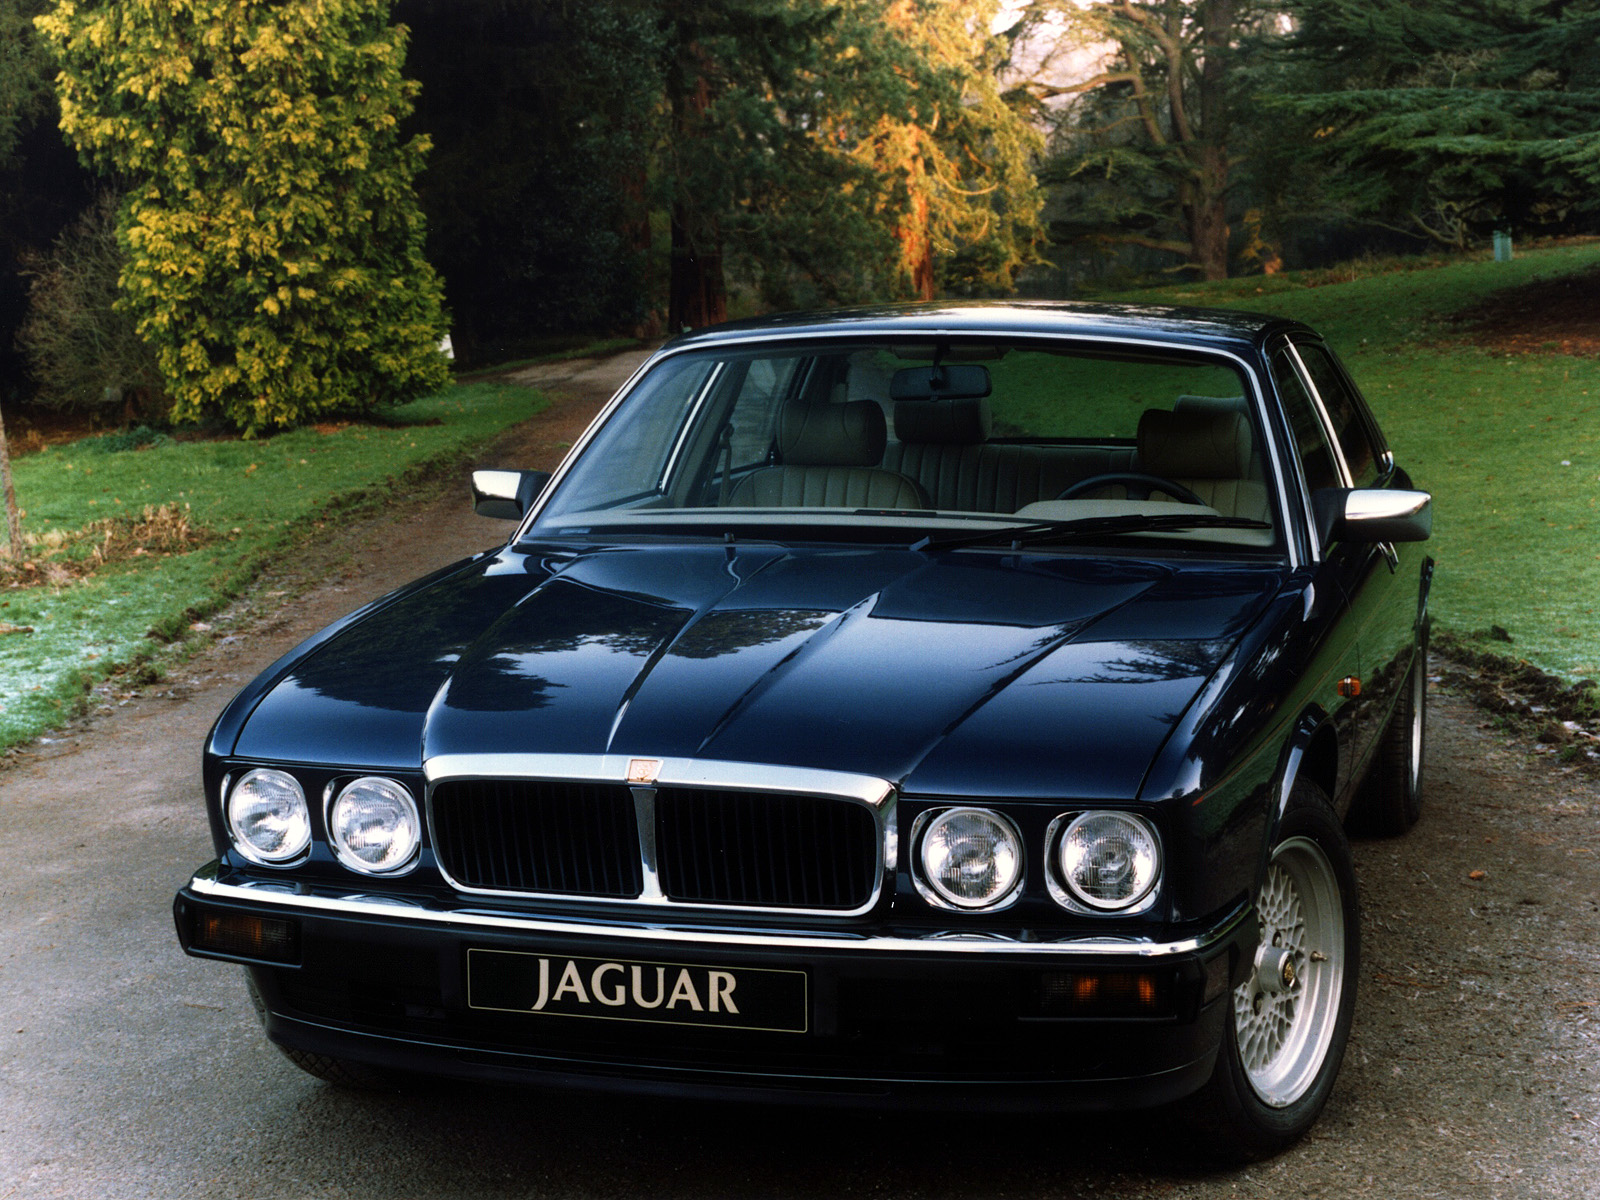 Jaguar XJ12 med de elegant sportiga runda lysena och de ursnygga kryssekerfälgarna. Roar!